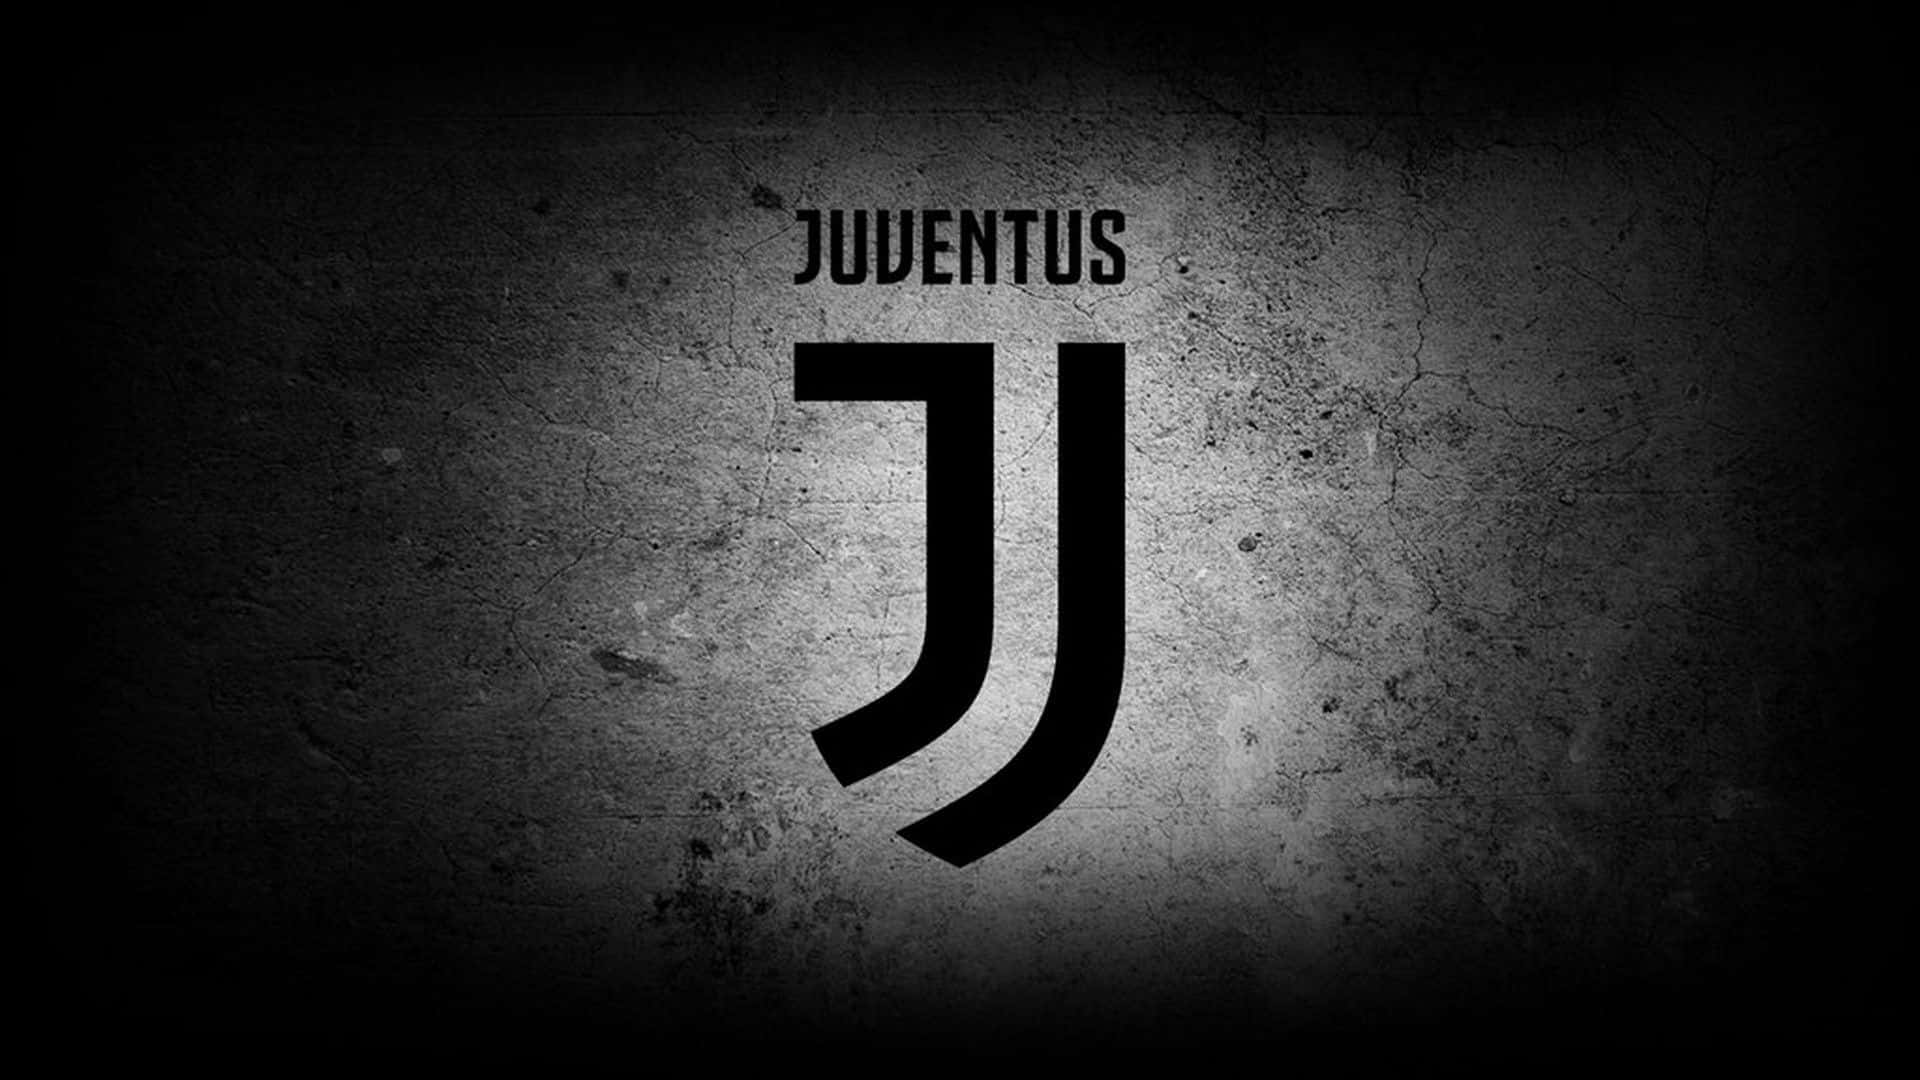 Defend the Juventus in the Stadium